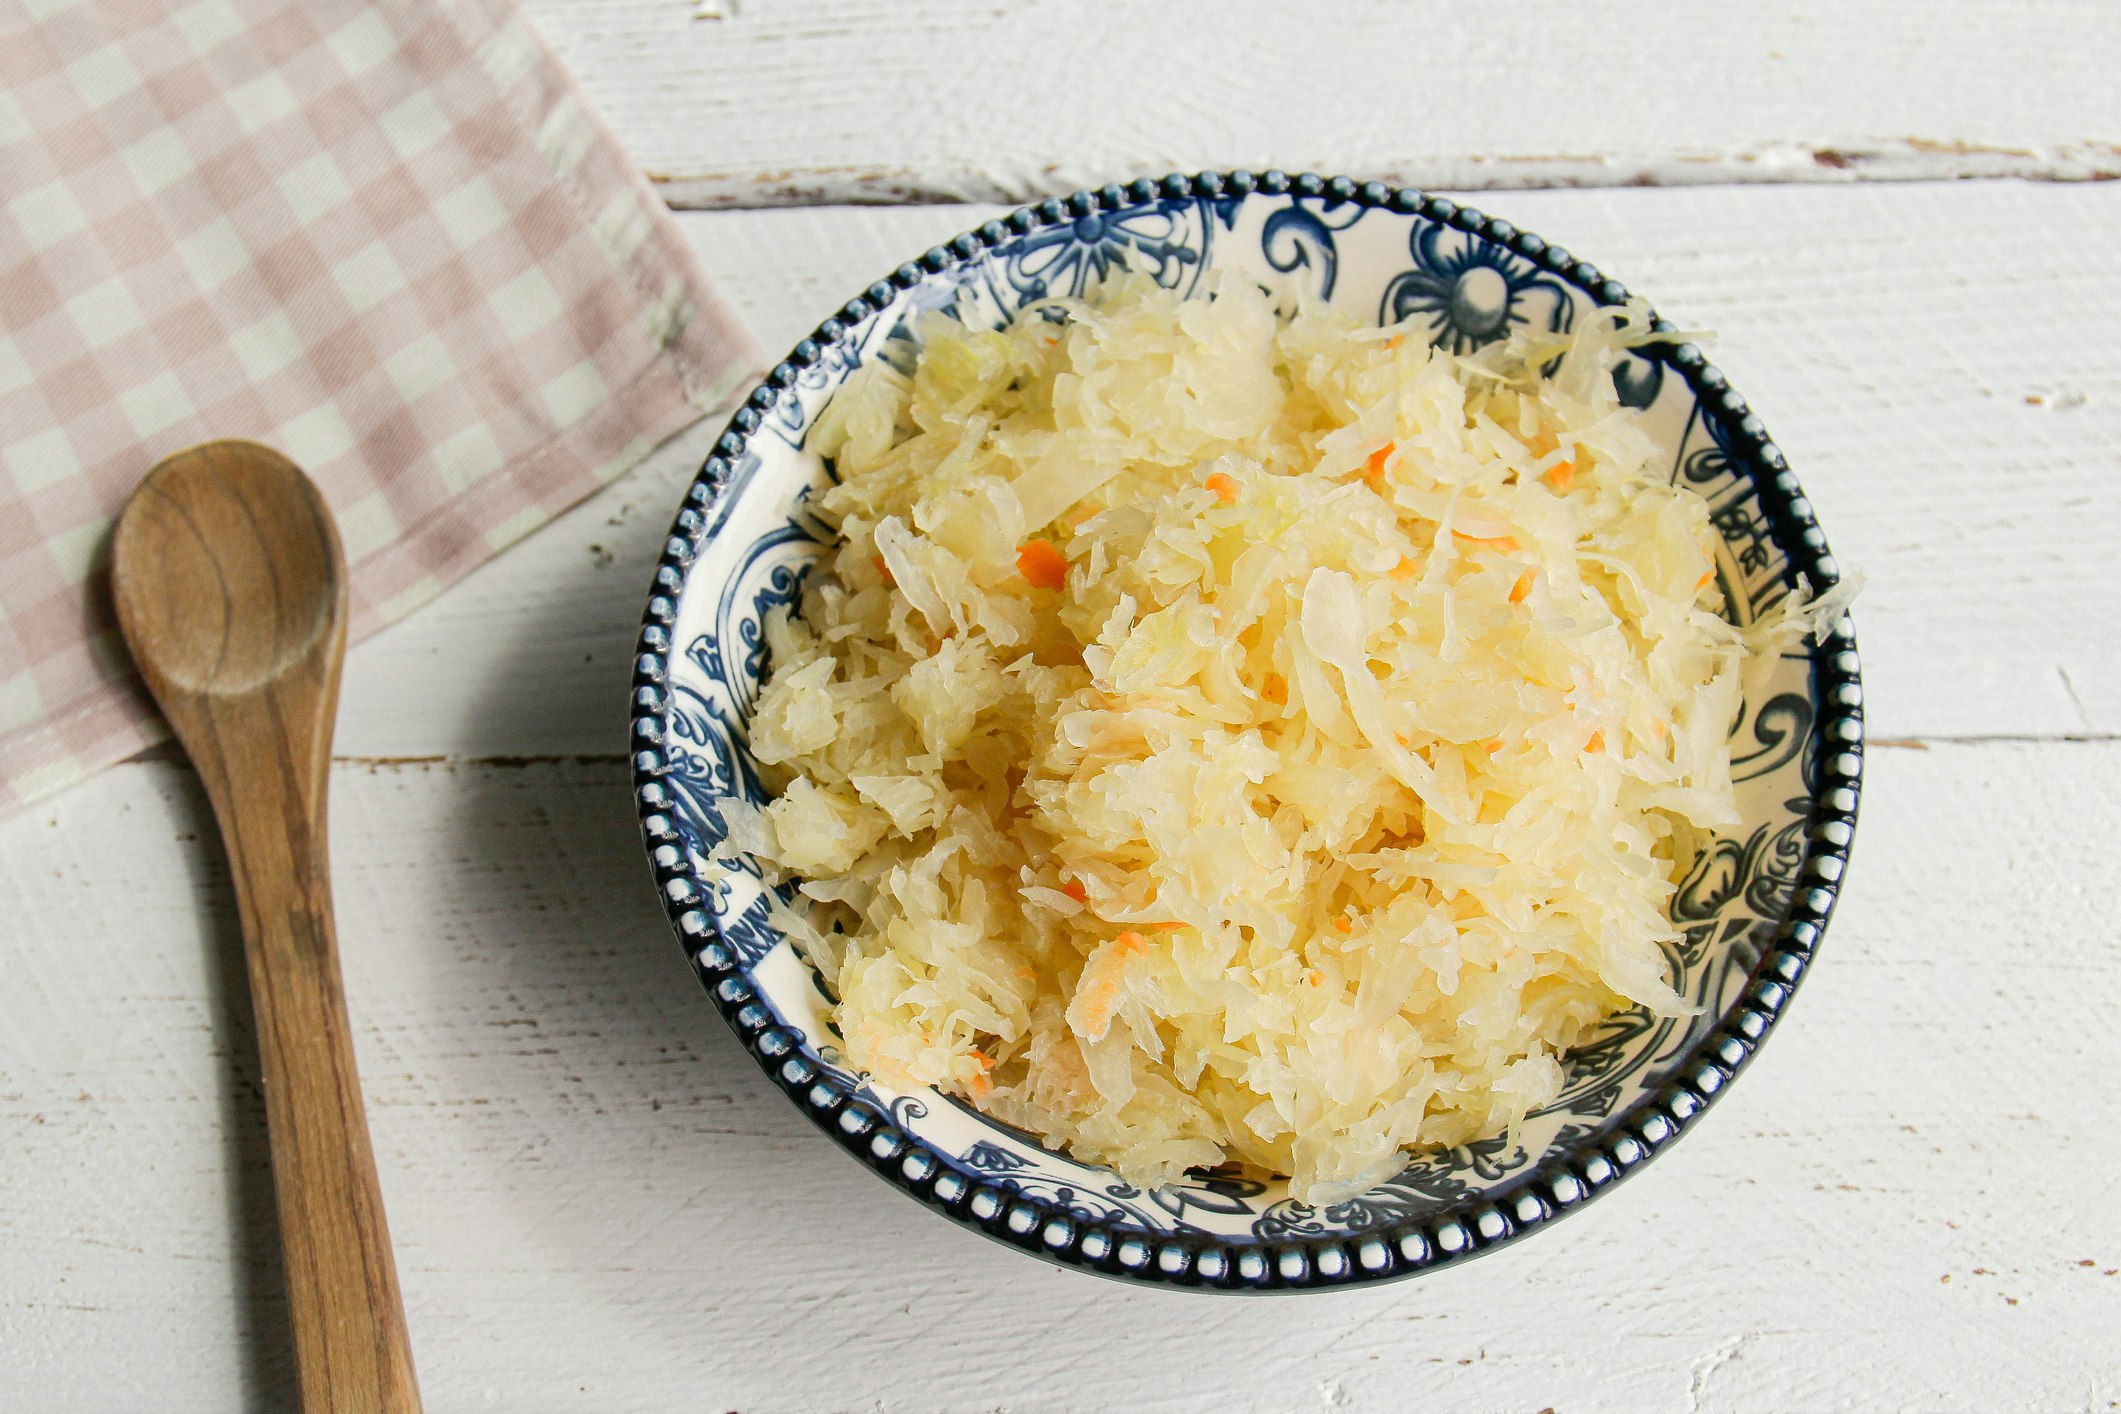 A plate of sauerkraut